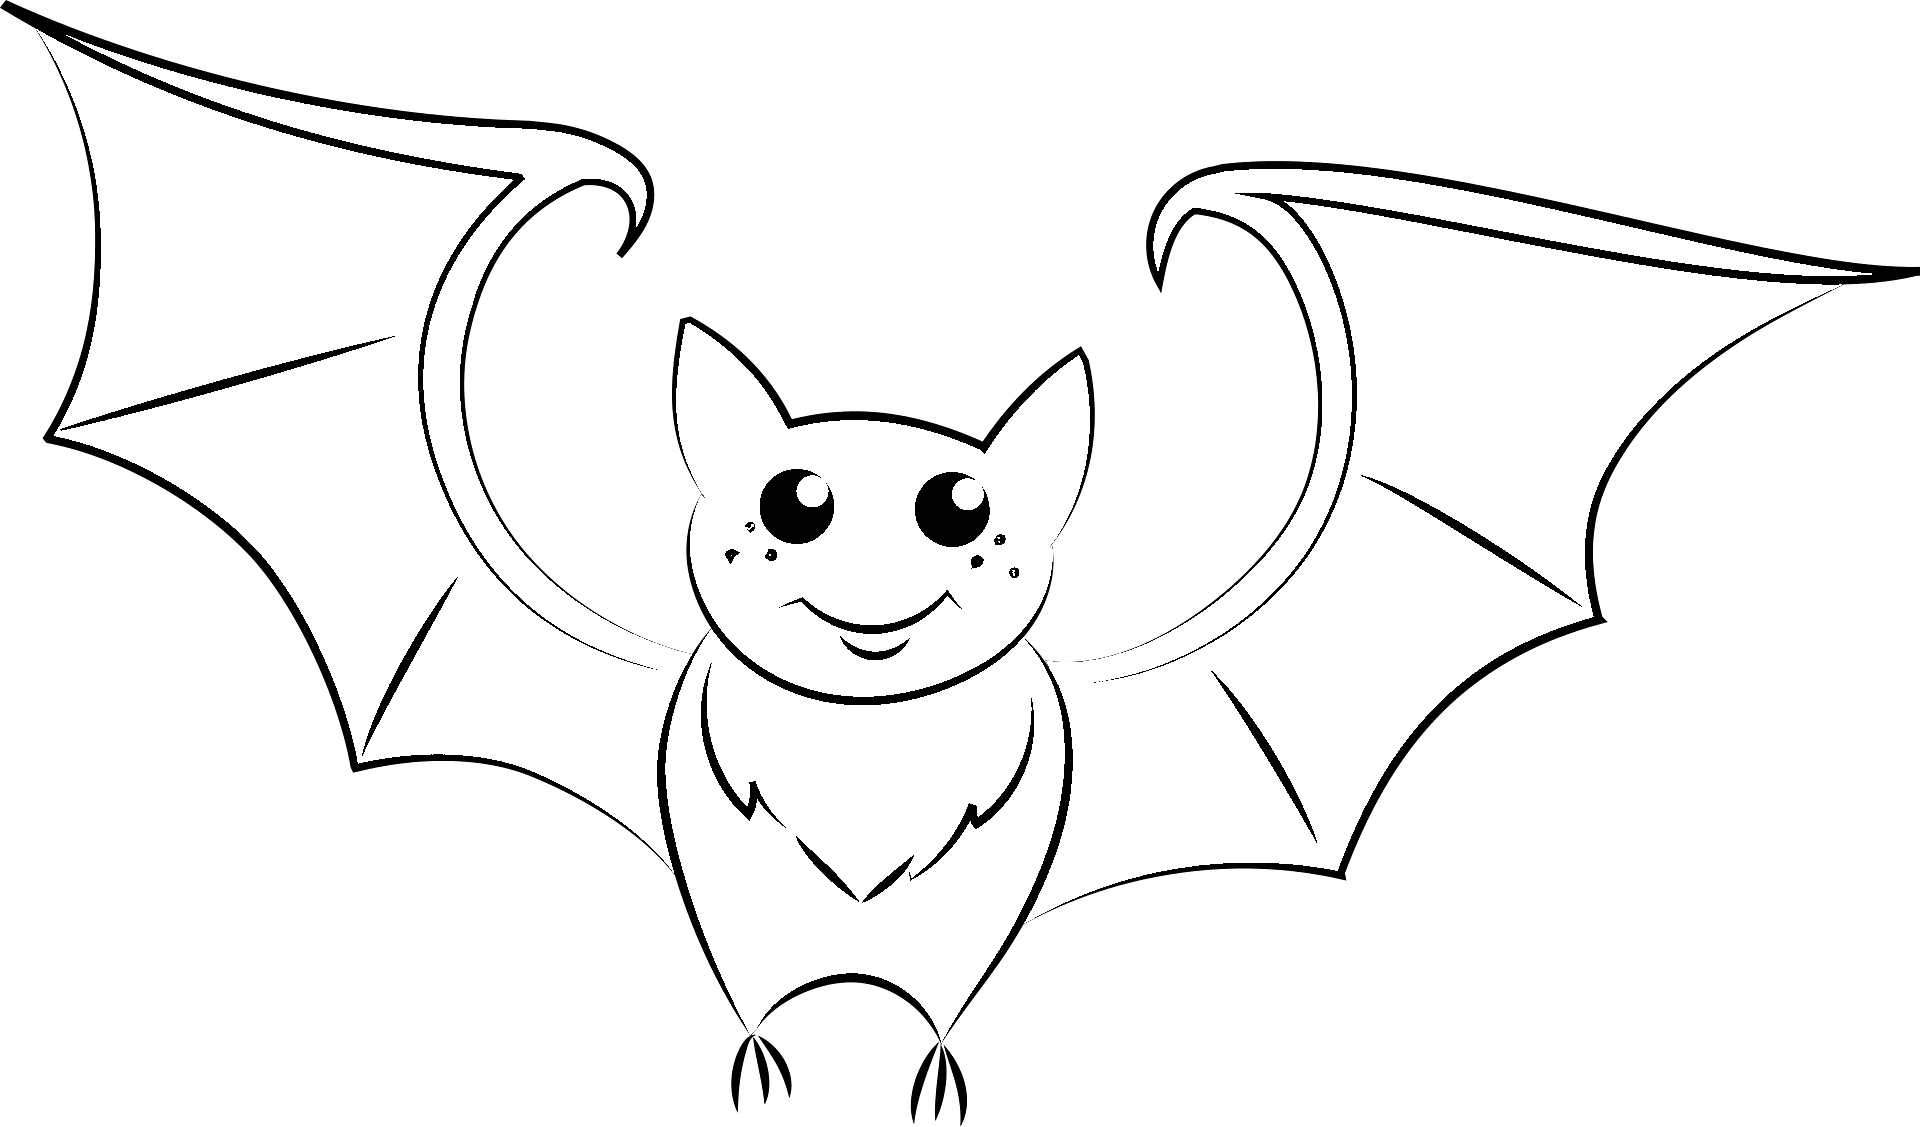 Disegno da colorare di un pipistrello